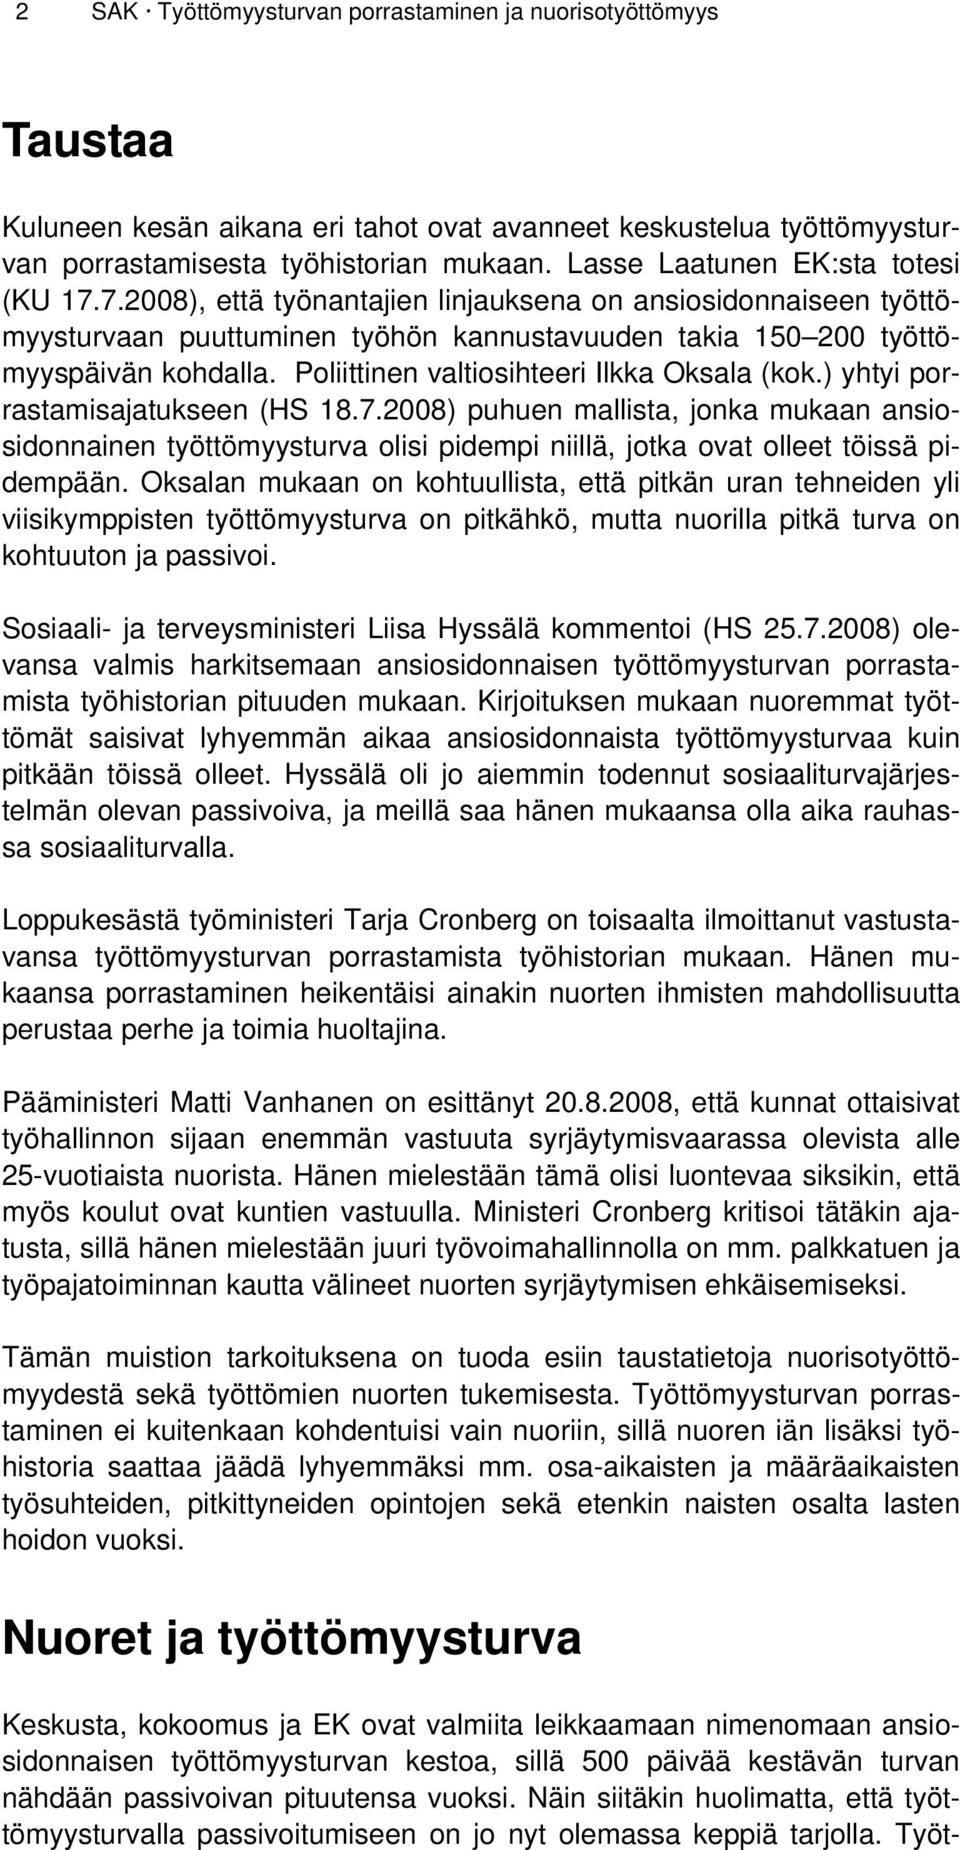 Poliittinen valtiosihteeri Ilkka Oksala (kok.) yhtyi porrastamisajatukseen (HS 18.7.